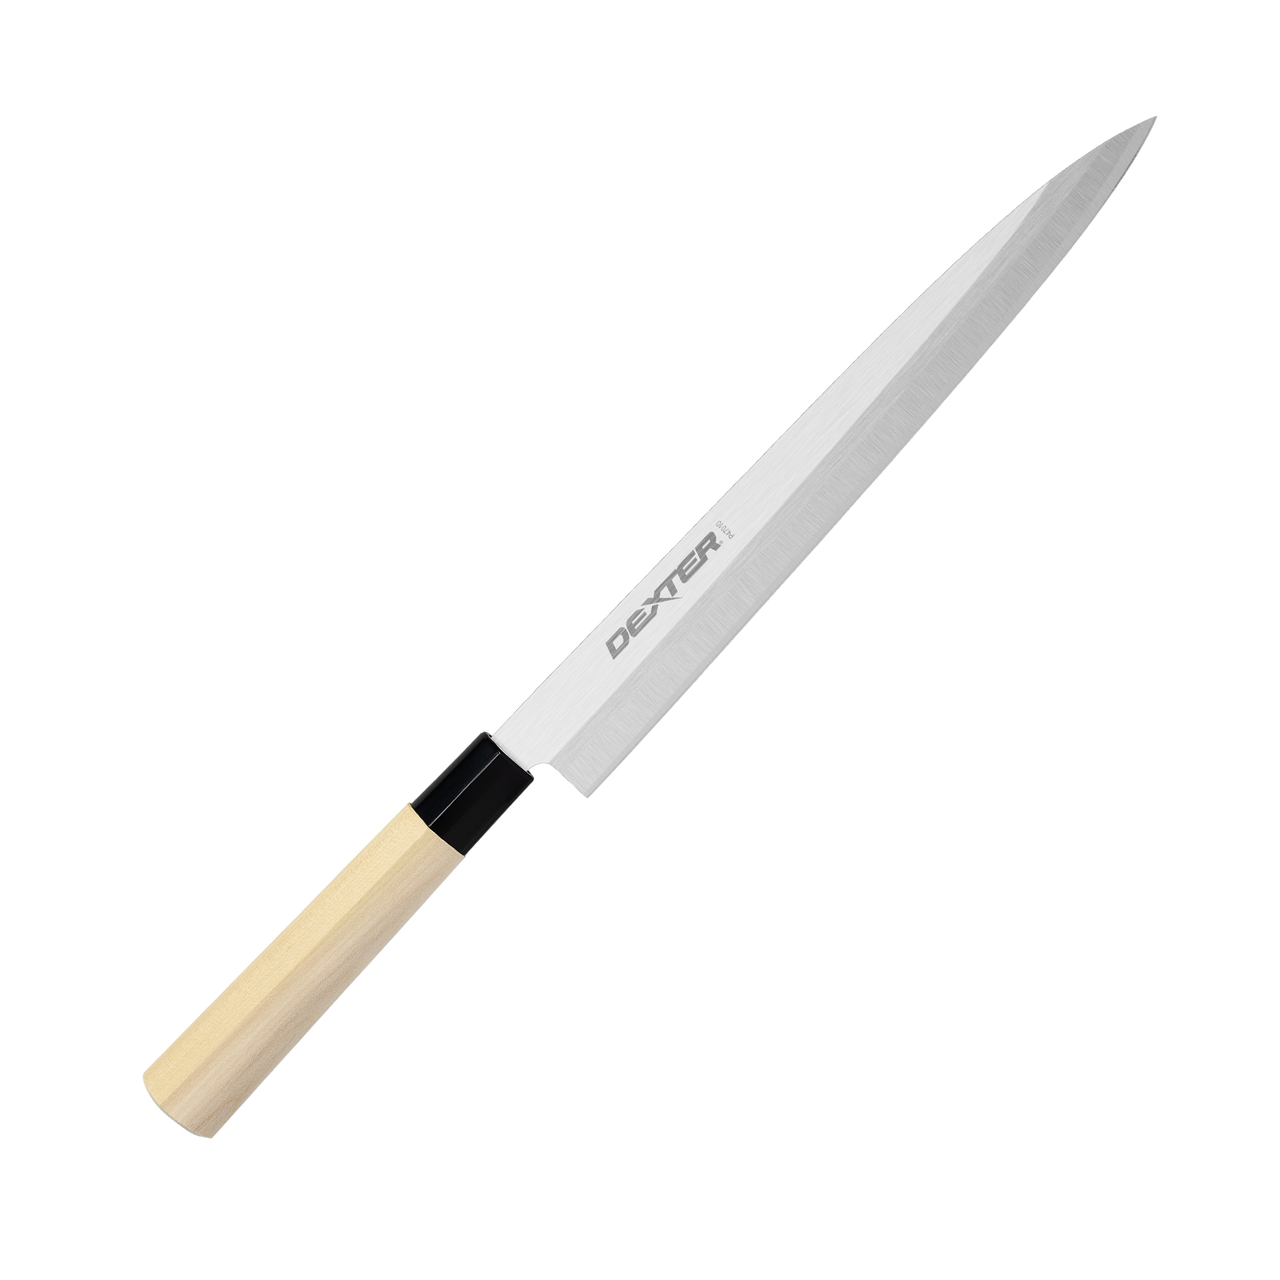 KEEMAKE Sushi Knife 10 inch, Sashimi Knife